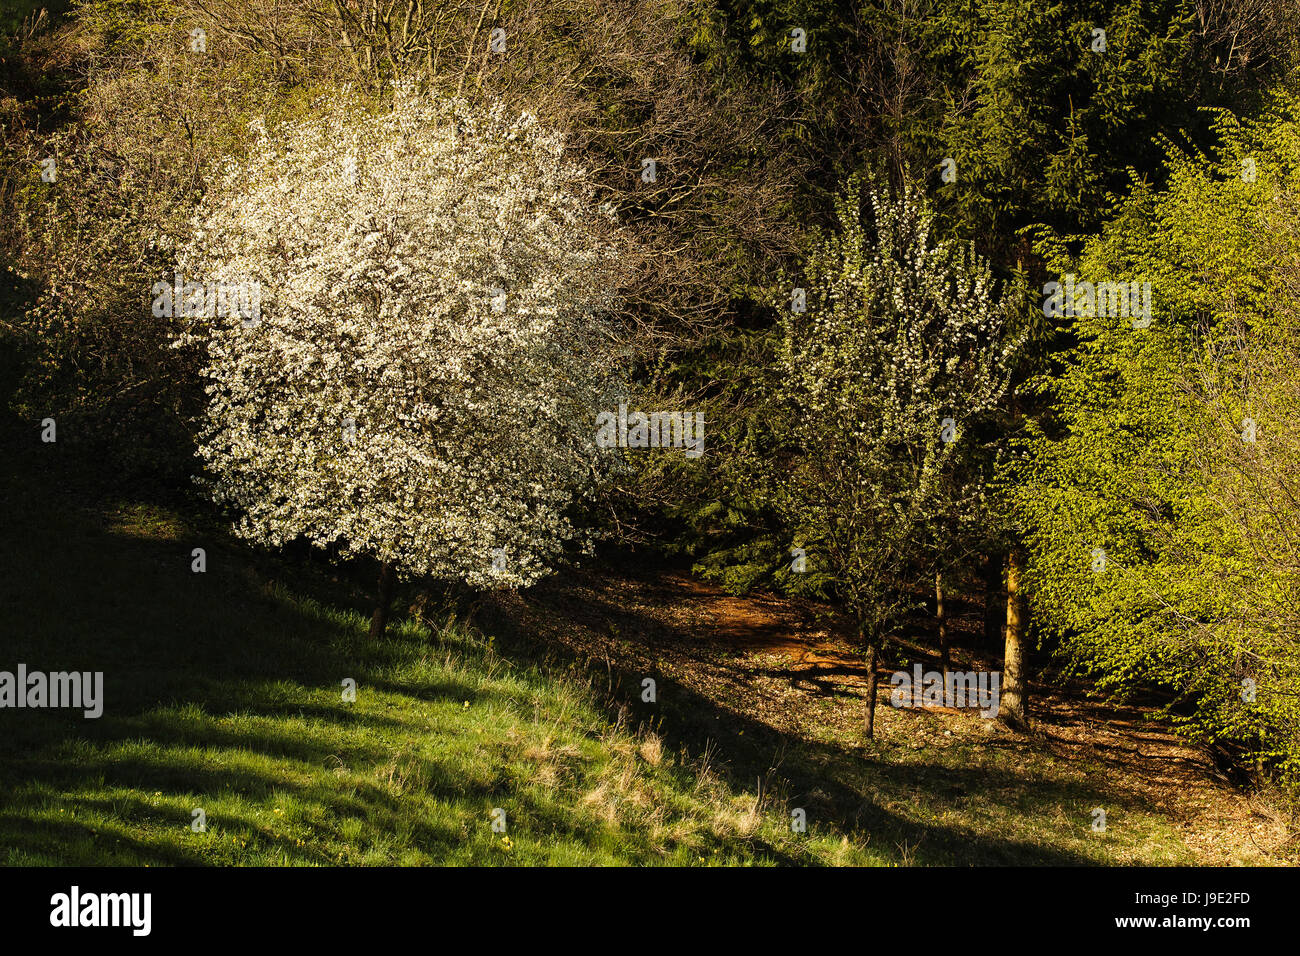 Albero, molla, il patrimonio culturale mondiale, di alberi da frutto, brilla, brilla, luminoso Foto Stock